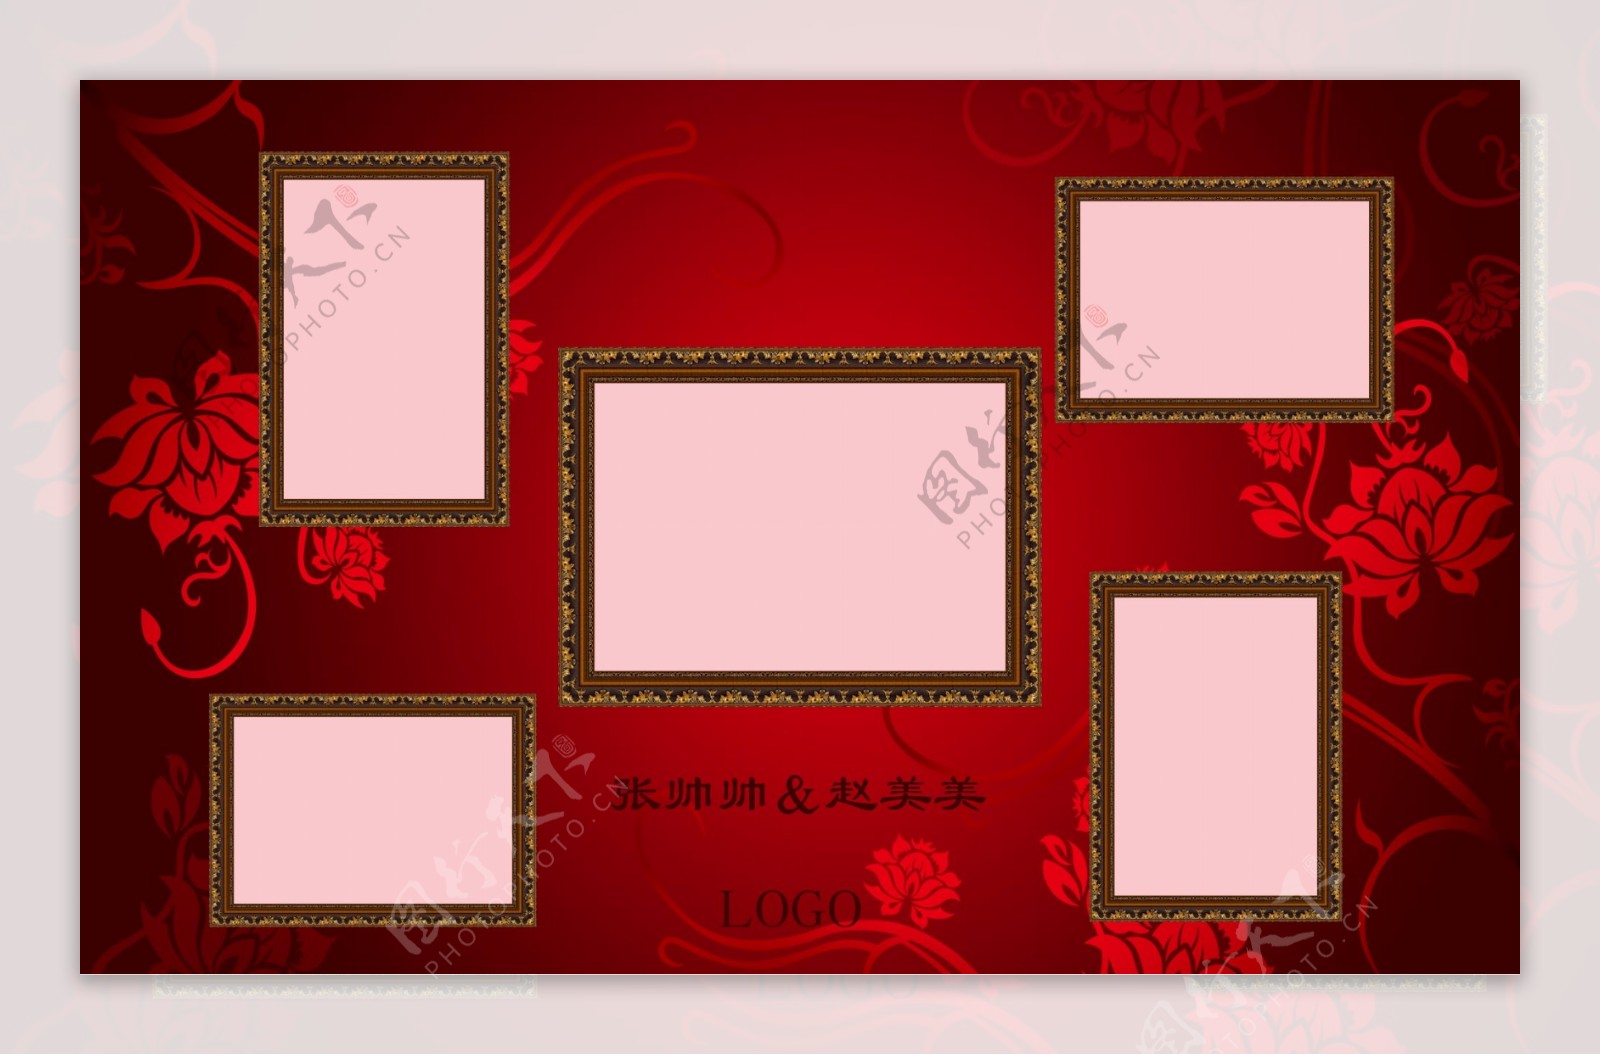 中式红蓝婚礼照片喷绘设计